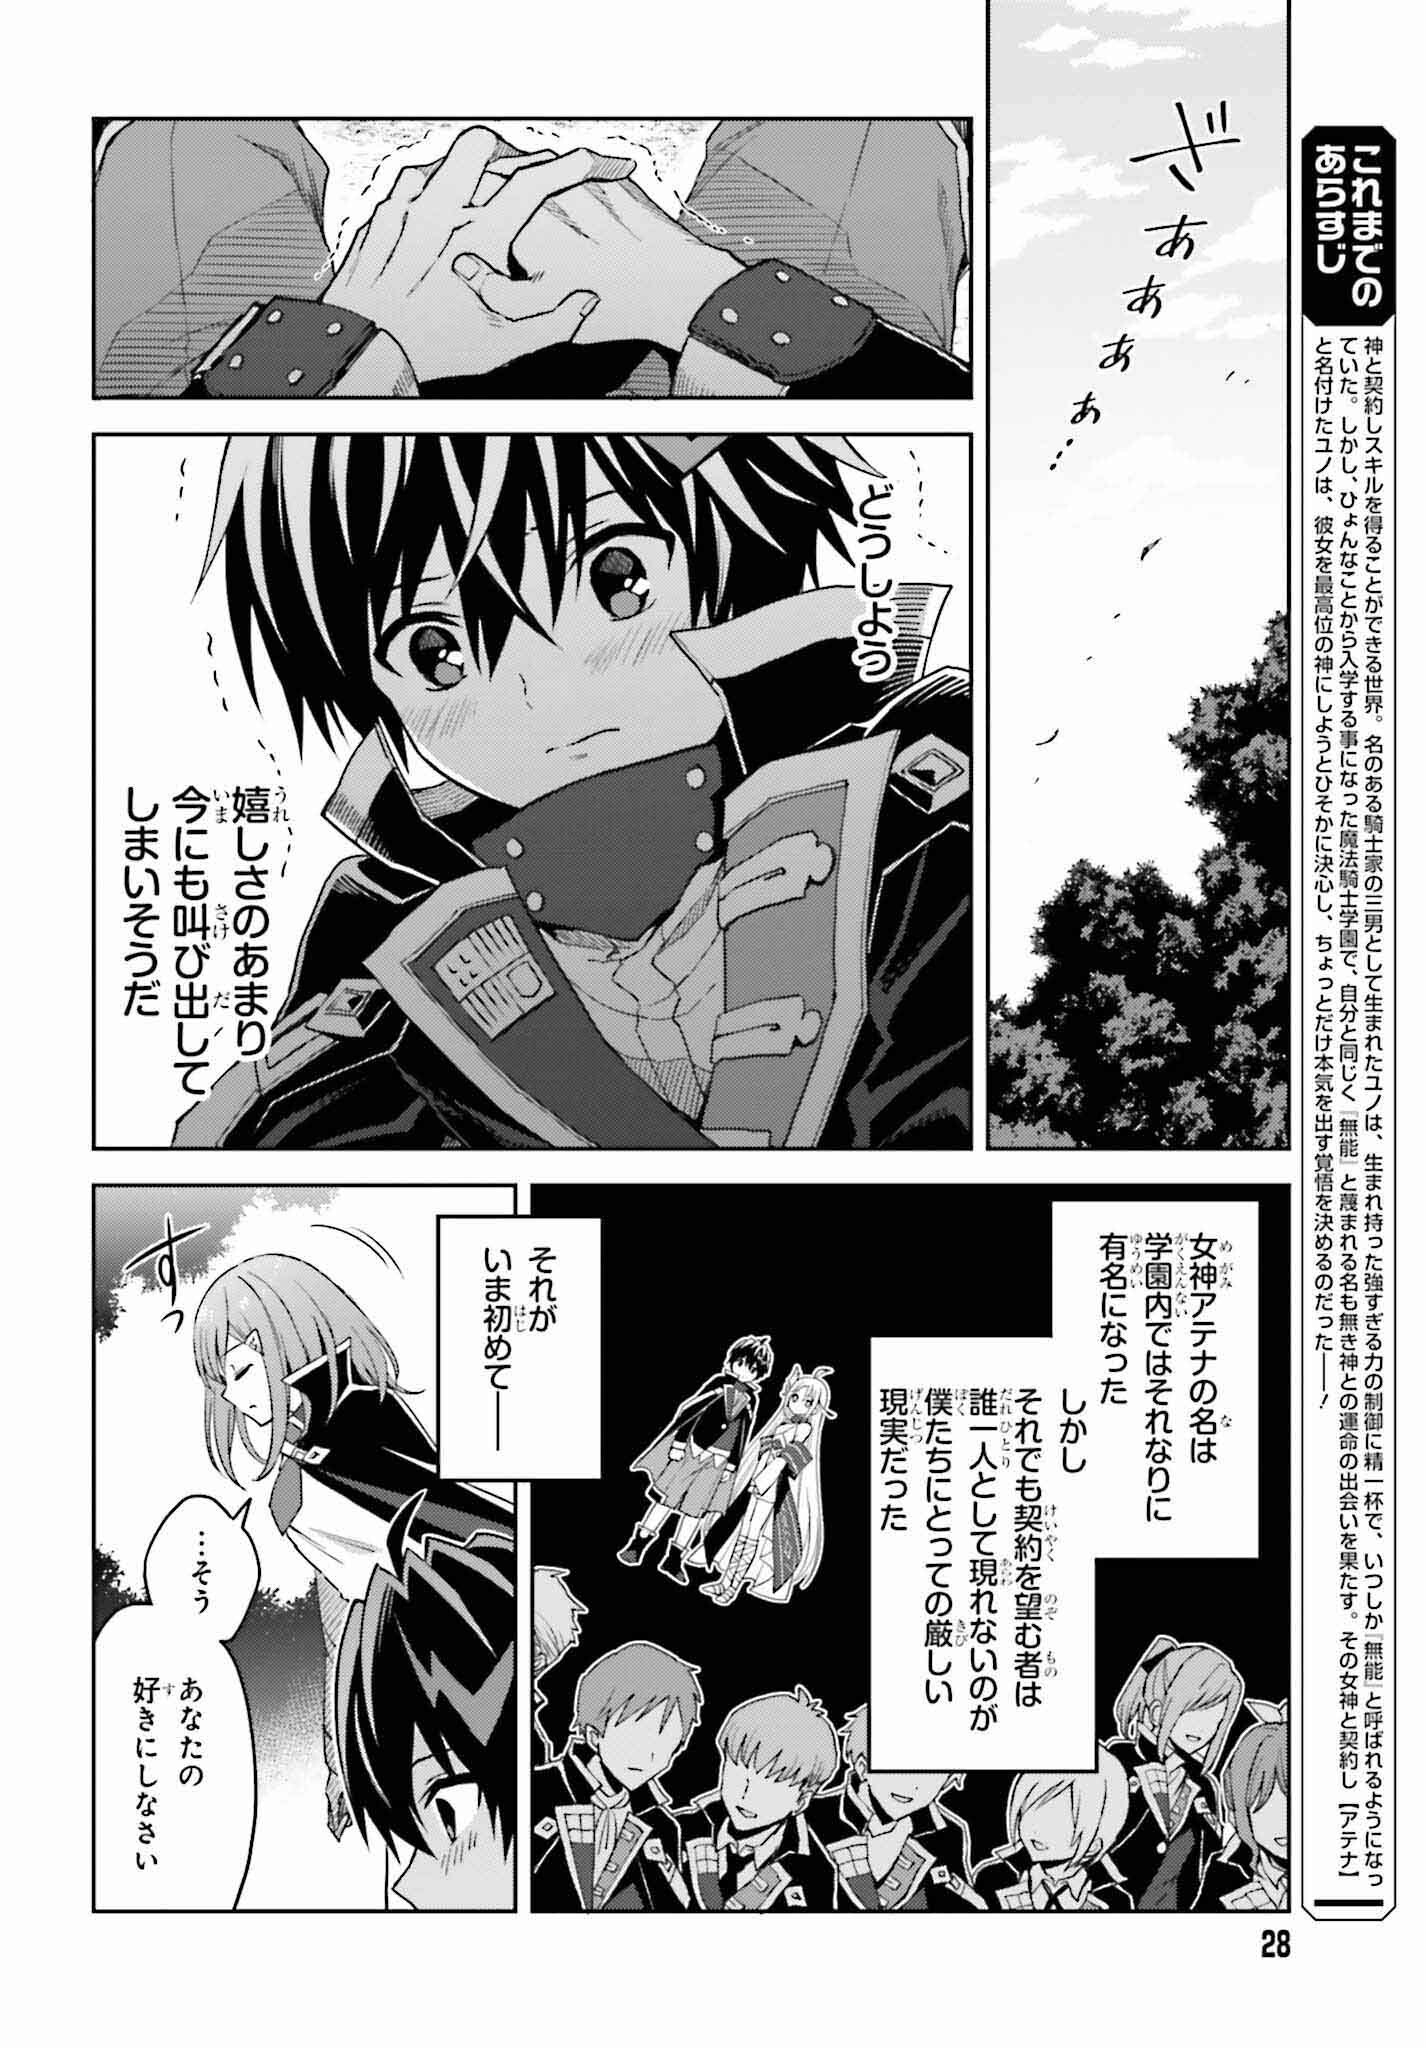 Shin no Jitsuryoku wa Girigiri made Kakushite Iyou to Omou - Chapter 31 - Page 2